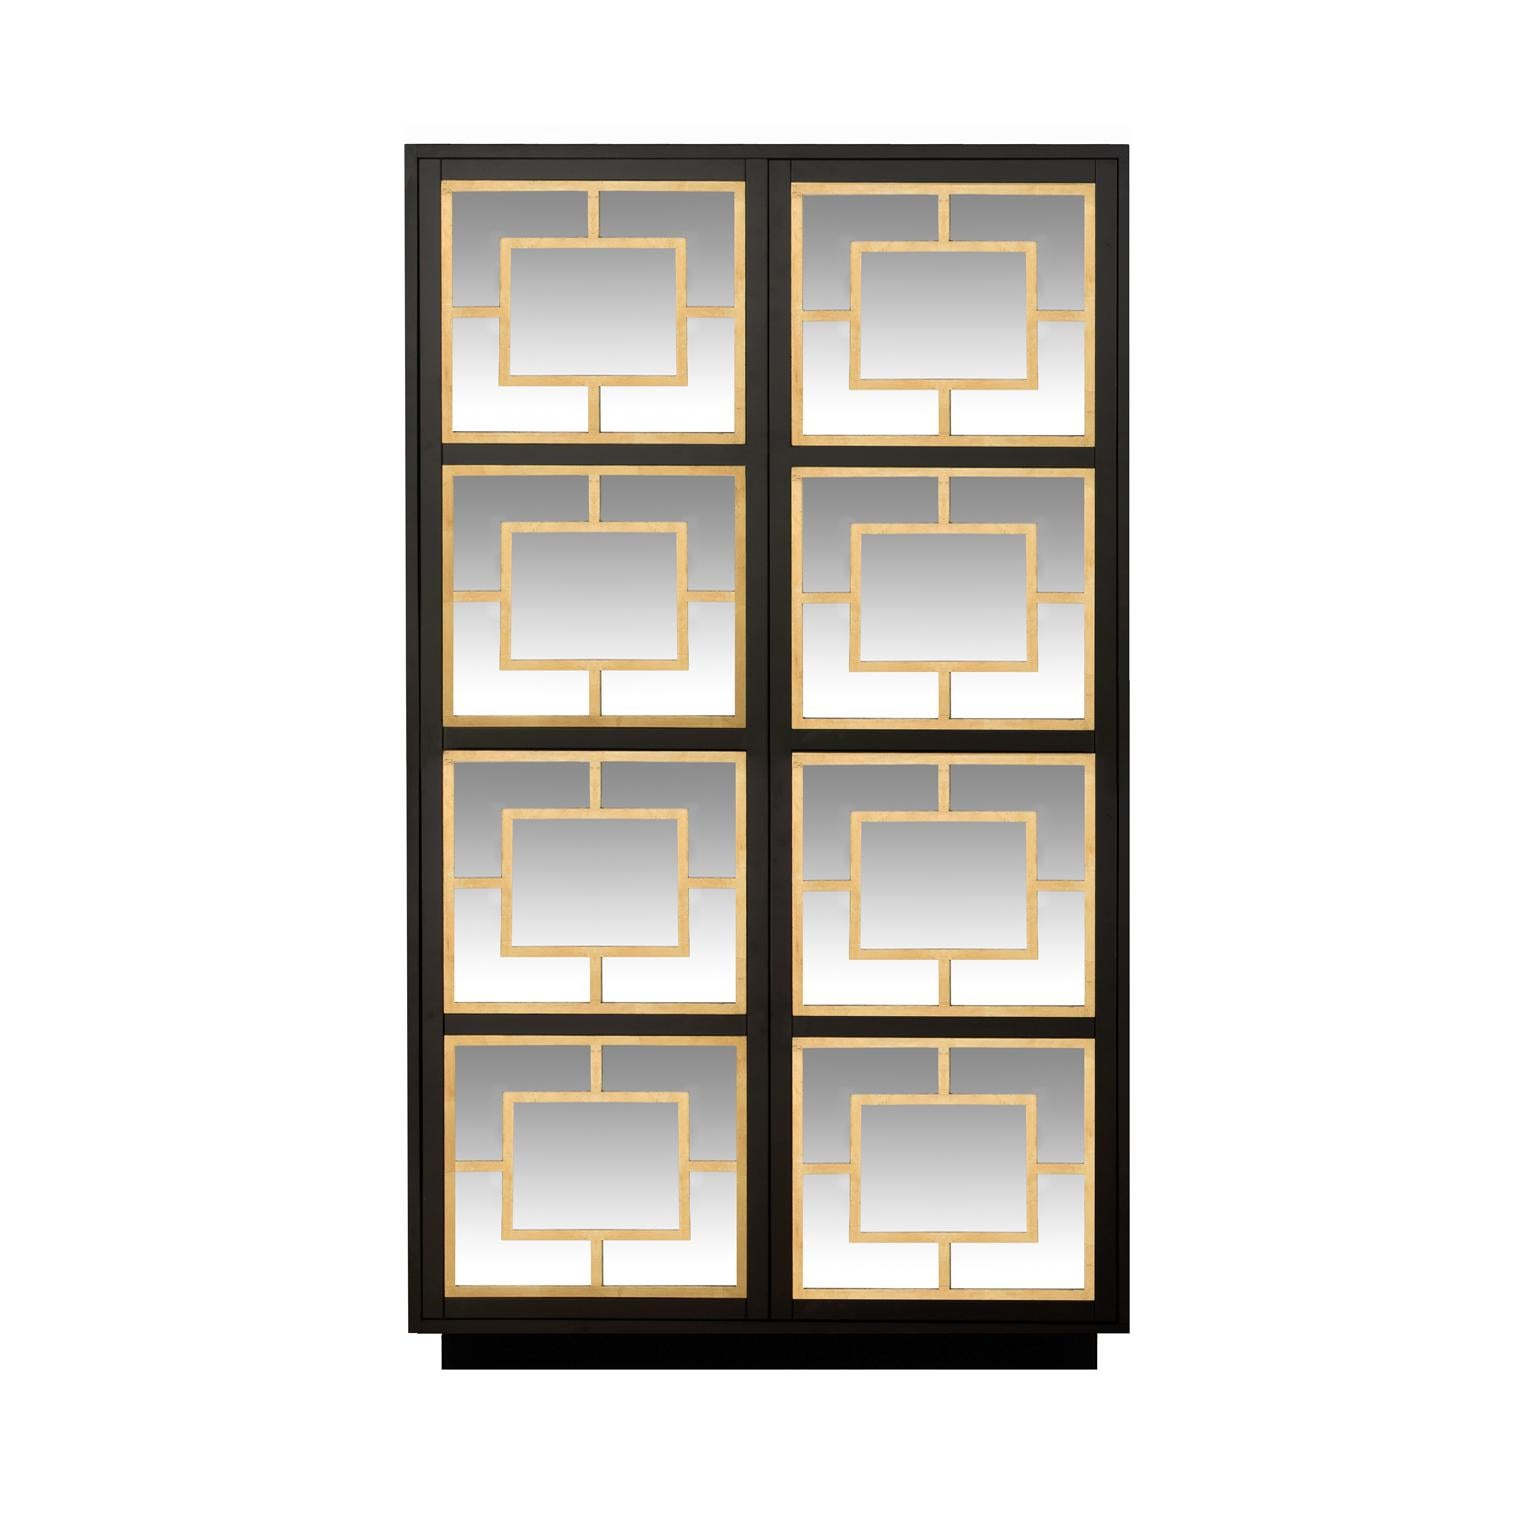 Conçue par ICS et fabriquée à la main par des artisans italiens experts, l'armoire comporte deux portes en miroir avec mécanisme d'ouverture par pression, recouvertes de décorations en feuilles d'or.
Accessoires et détails : 3 étagères en